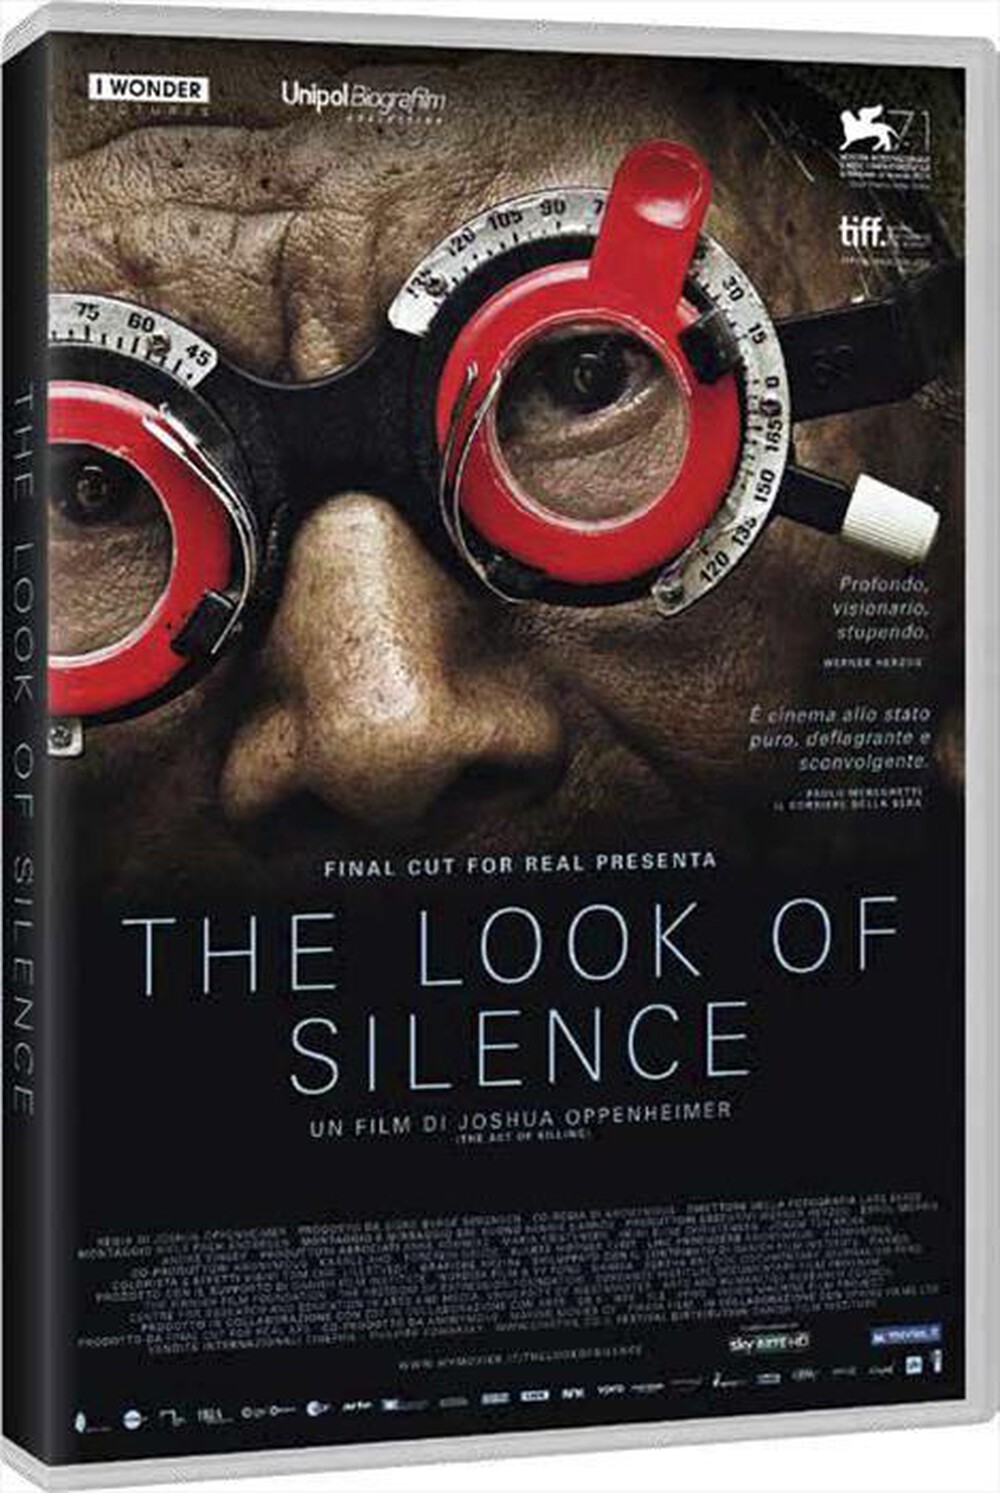 "CECCHI GORI - Look Of Silence (The)"